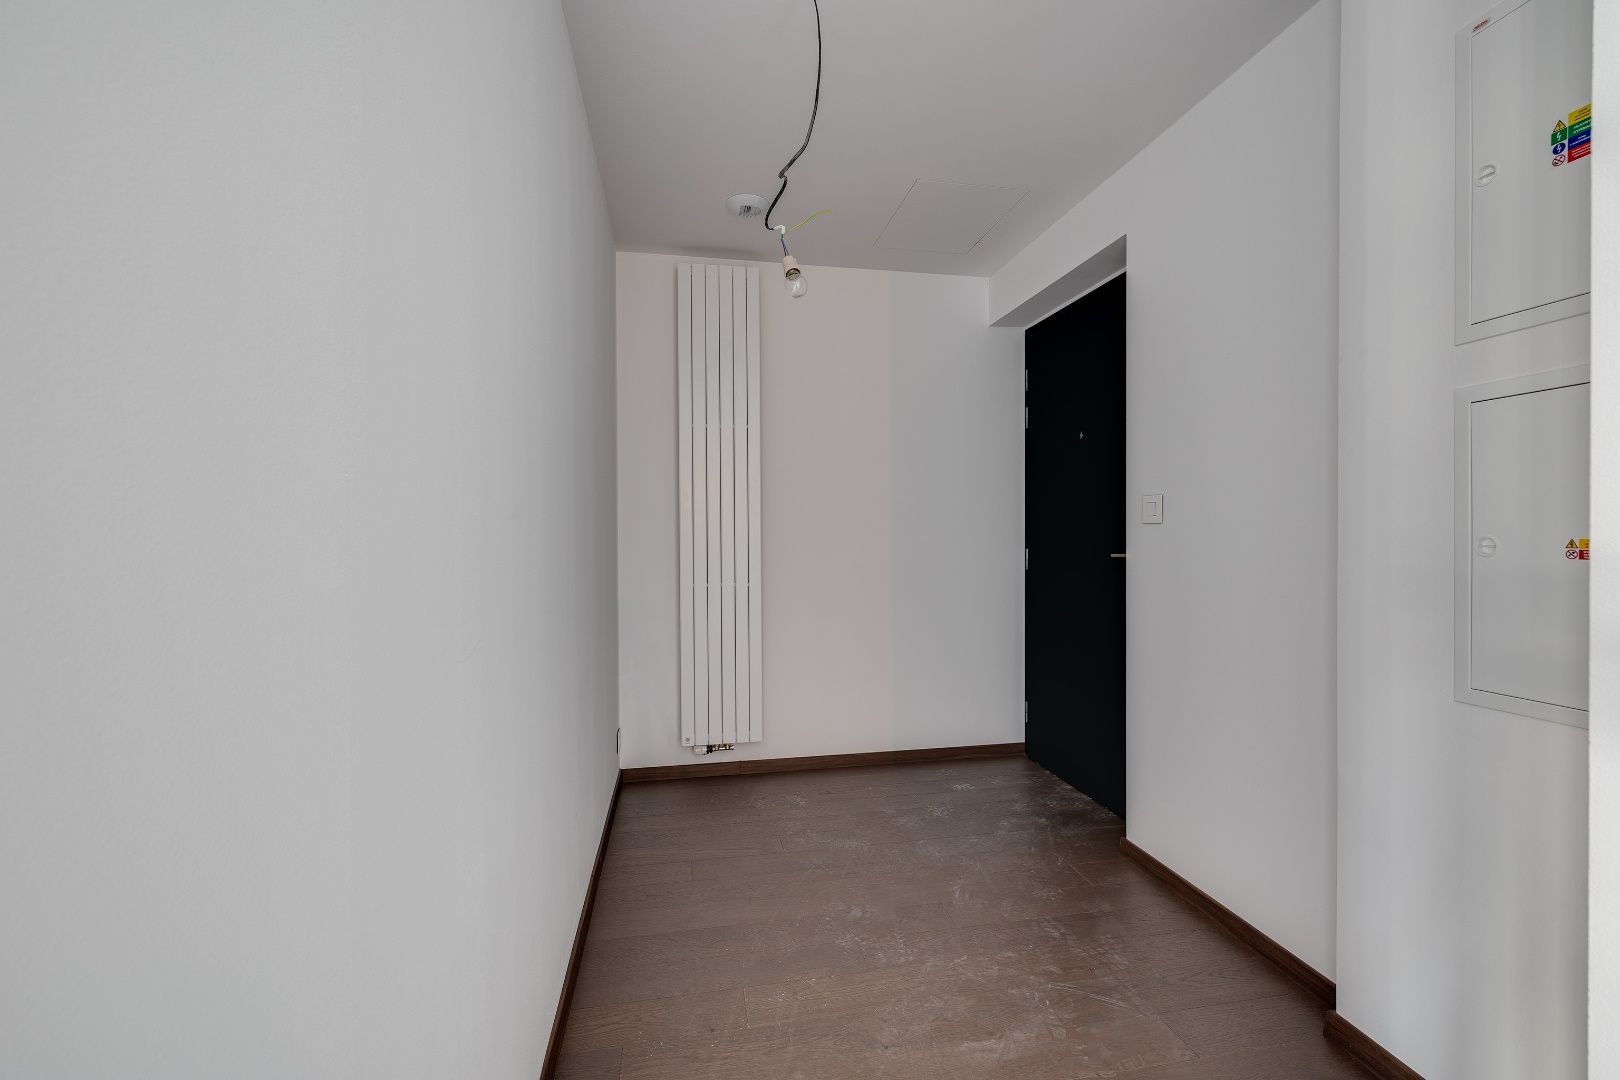 2 - izbový apartmán v projekte EUROVEA TOWER